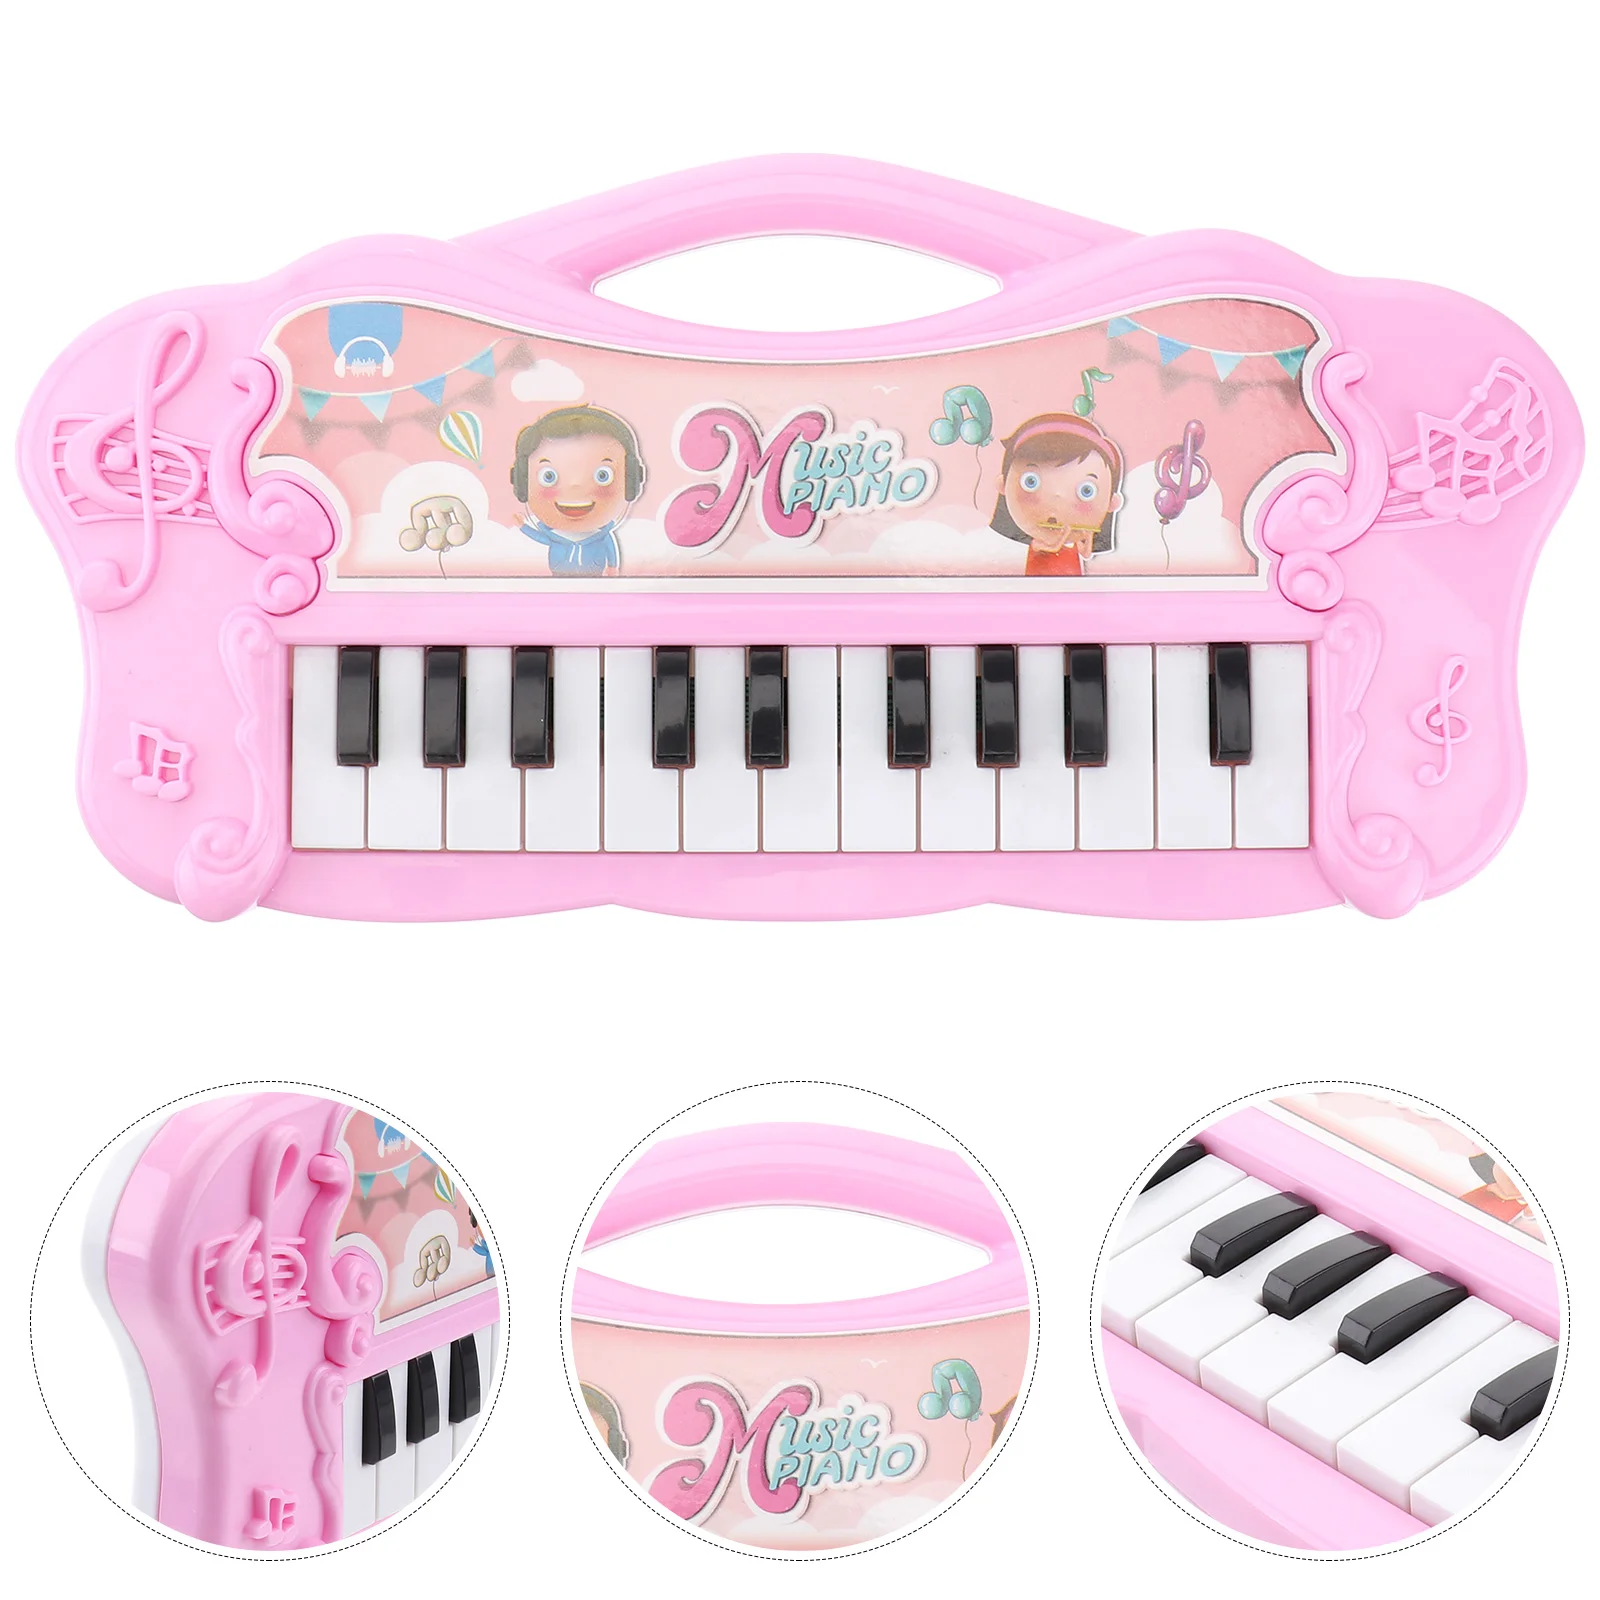 

Музыкальная клавиатура, игрушка для детей, Детский игровой набор, мини детский электронный орган, музыкальный инструмент, пластиковая развивающая игрушка для детей